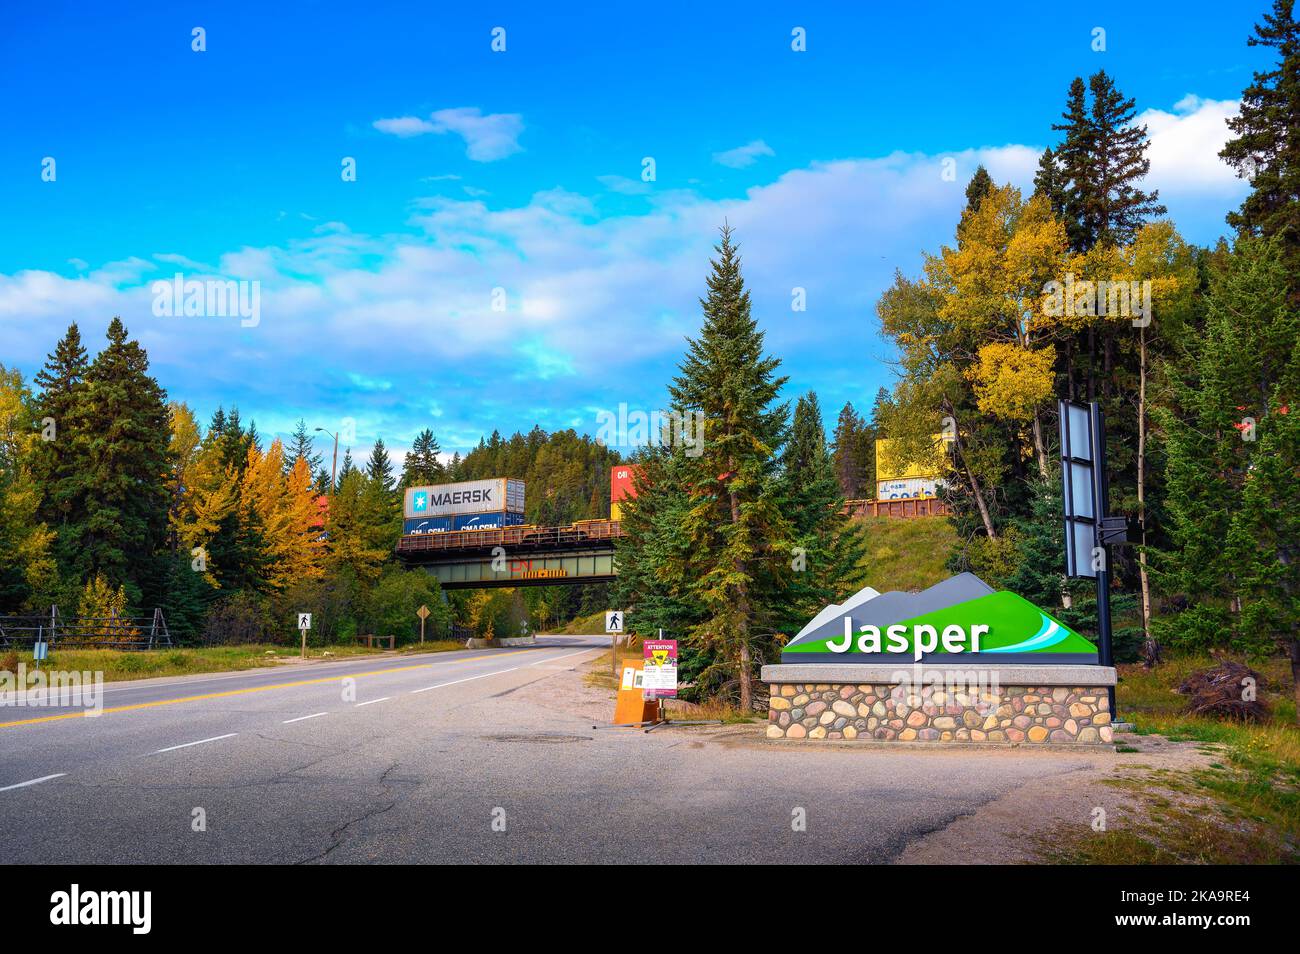 Panneau de bienvenue au village de Jasper situé dans les Rocheuses canadiennes Banque D'Images